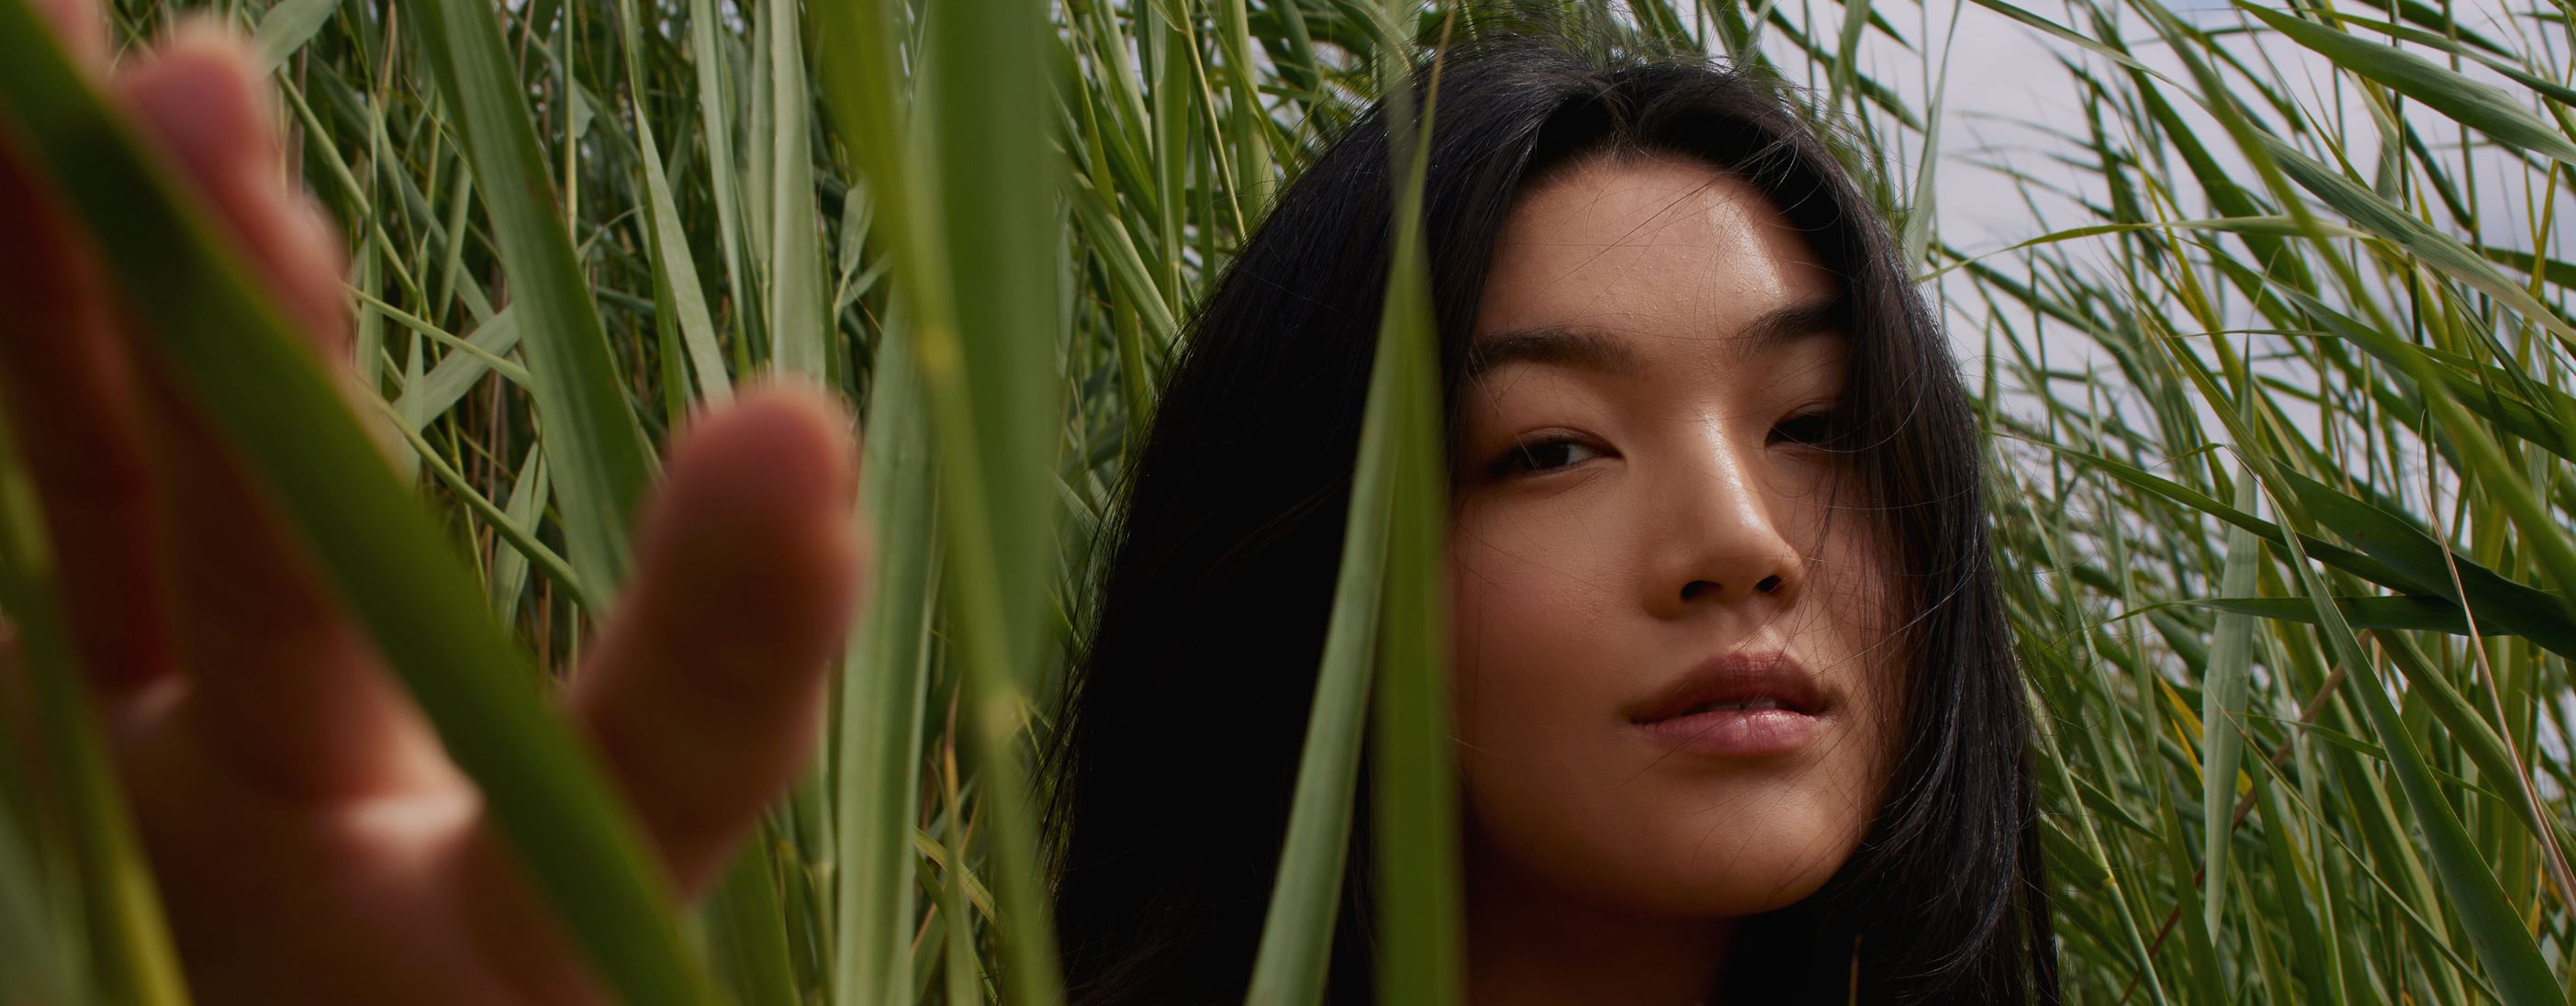 Asiatisches Mädchen steht auf einer grünen Wiese